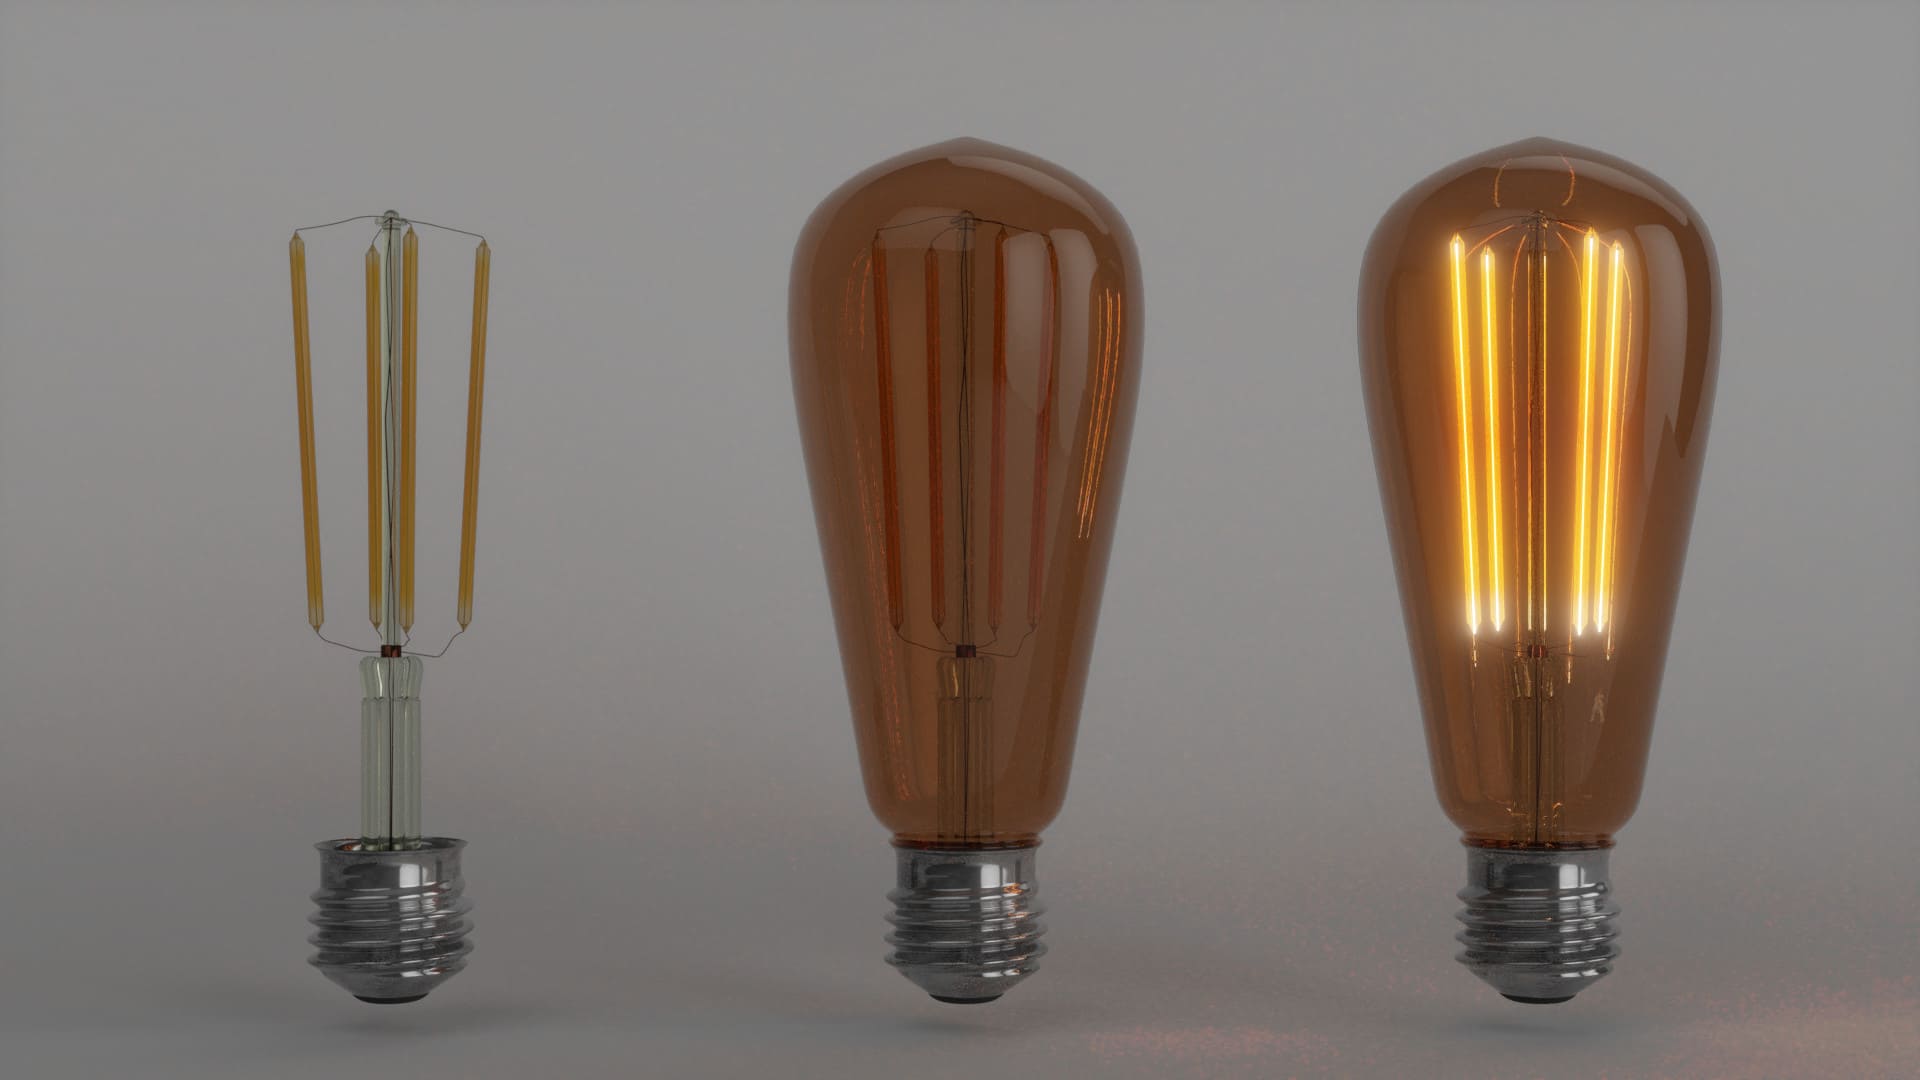 Illustrazione 3D di una lampadina a LED scomposta con a vista i suoi componenti